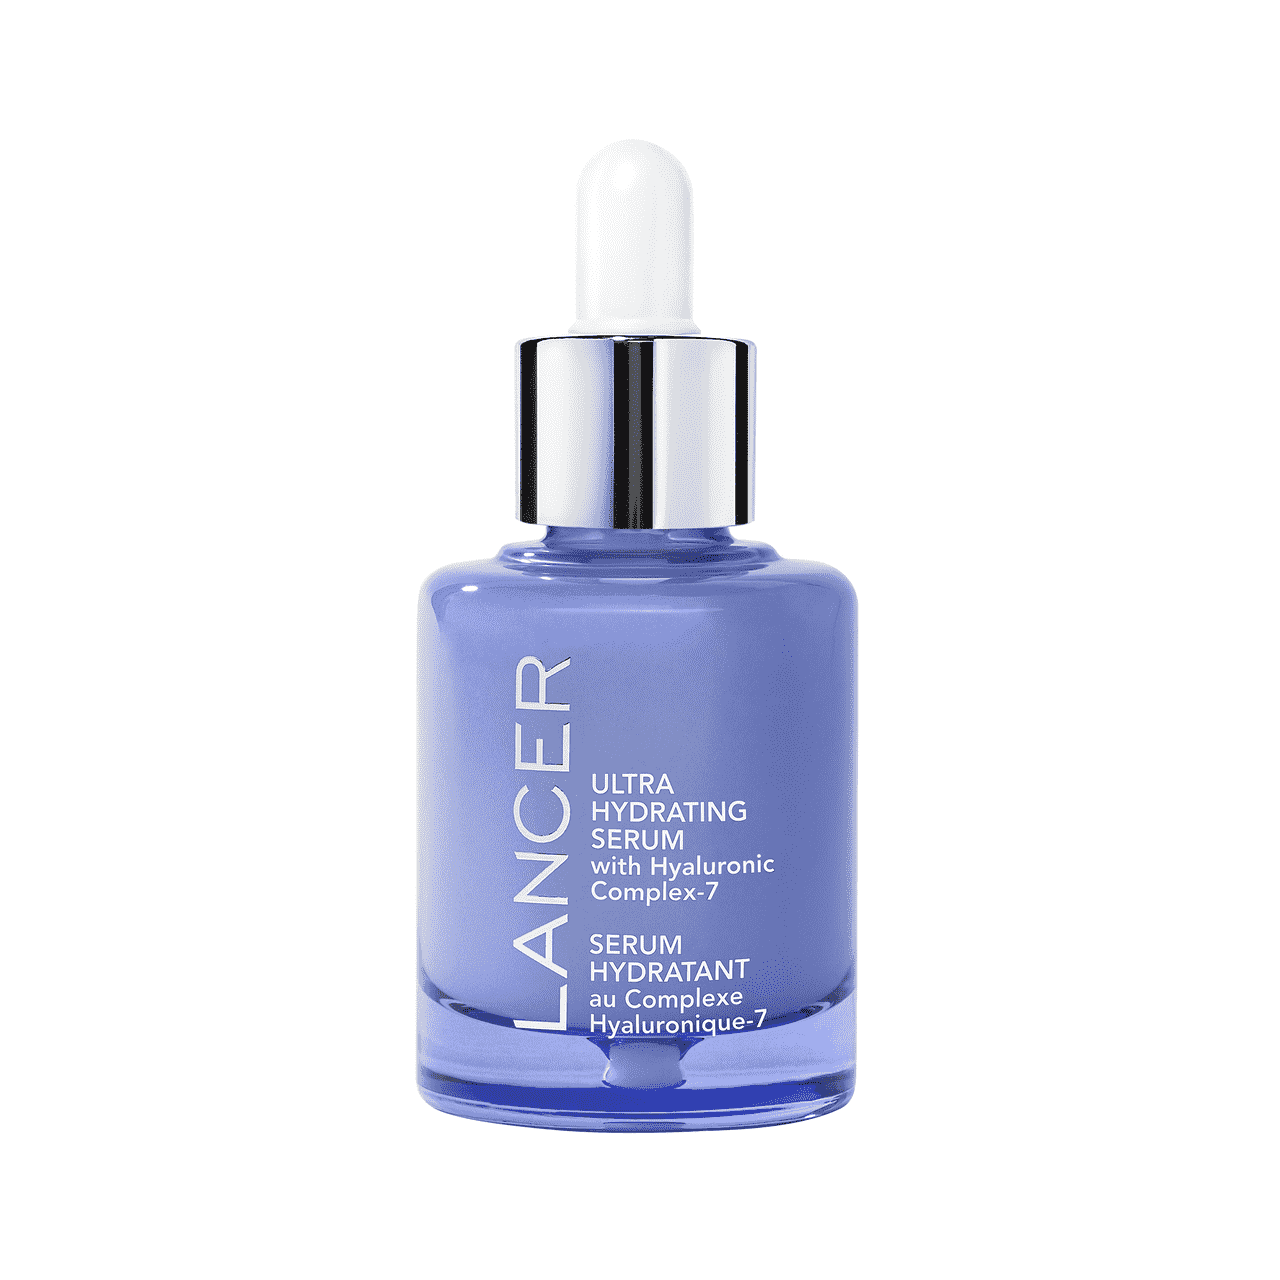 Lancer Skincare Ultra Hydrating Serum blaue Serumflasche auf weißem Hintergrund